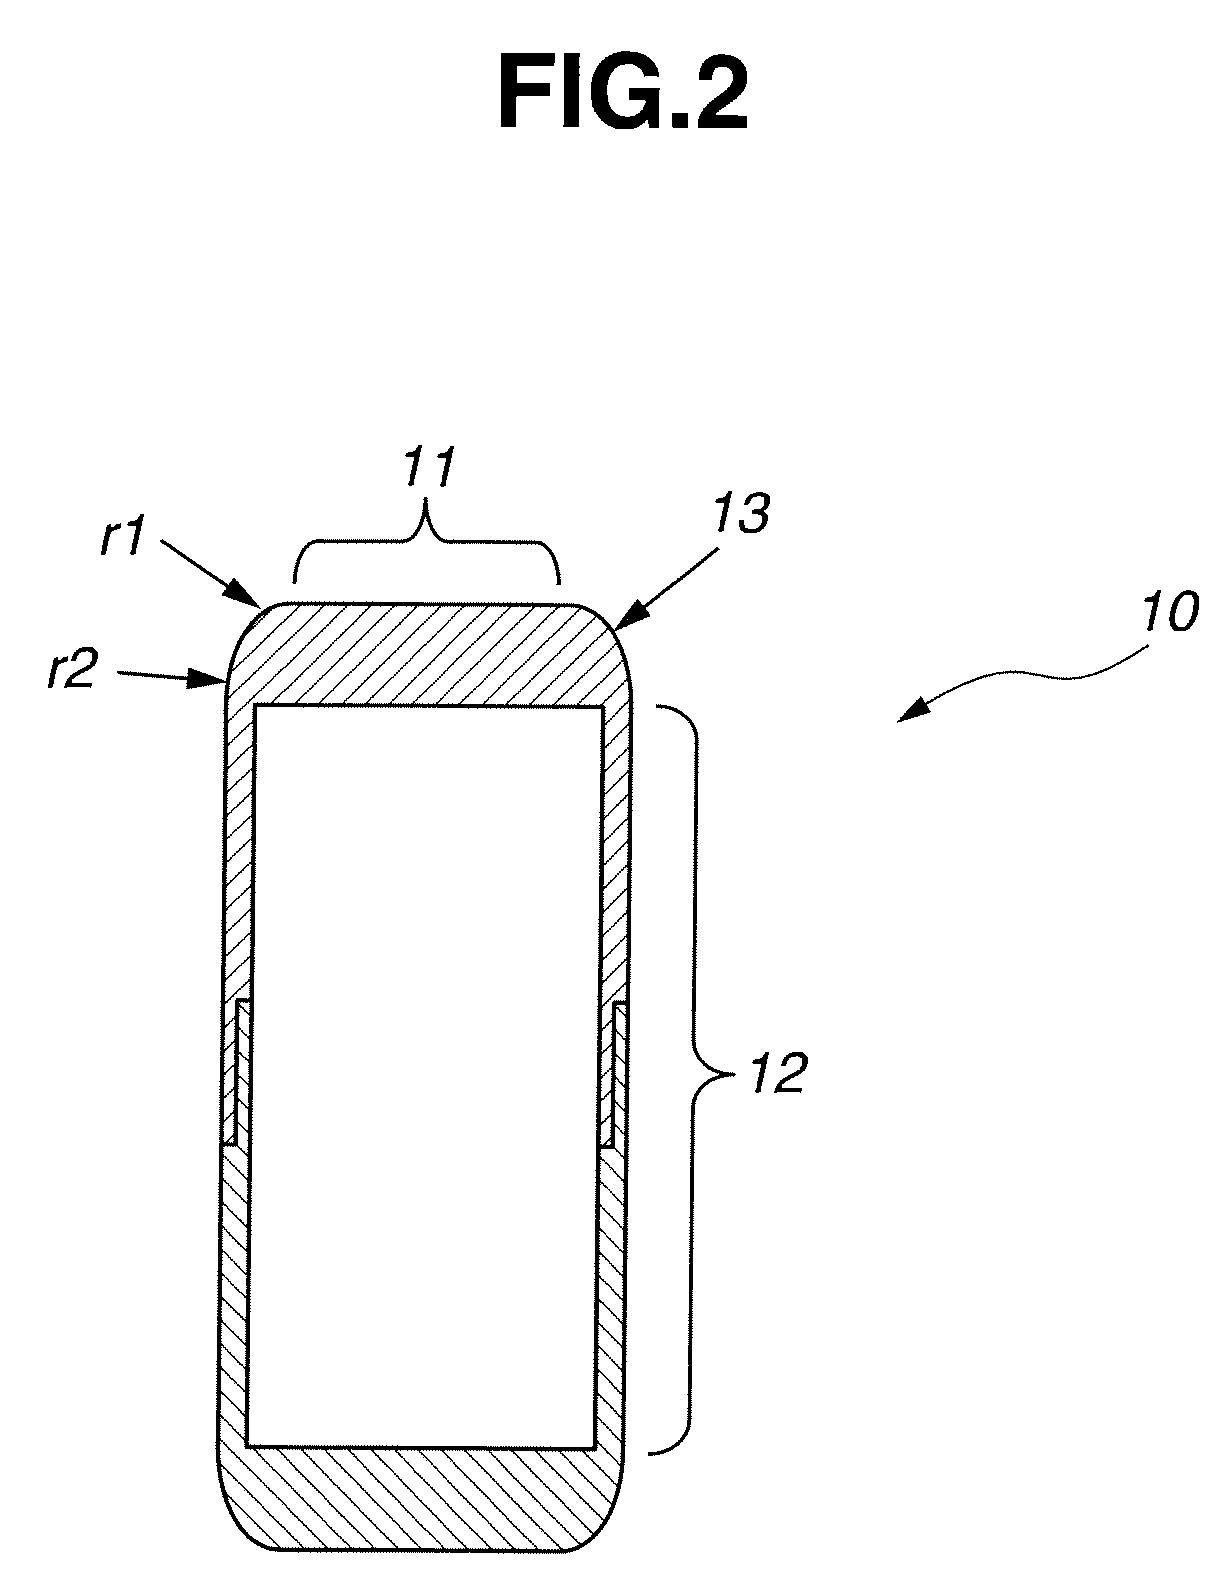 Insulating bobbin for stator of rotary machine